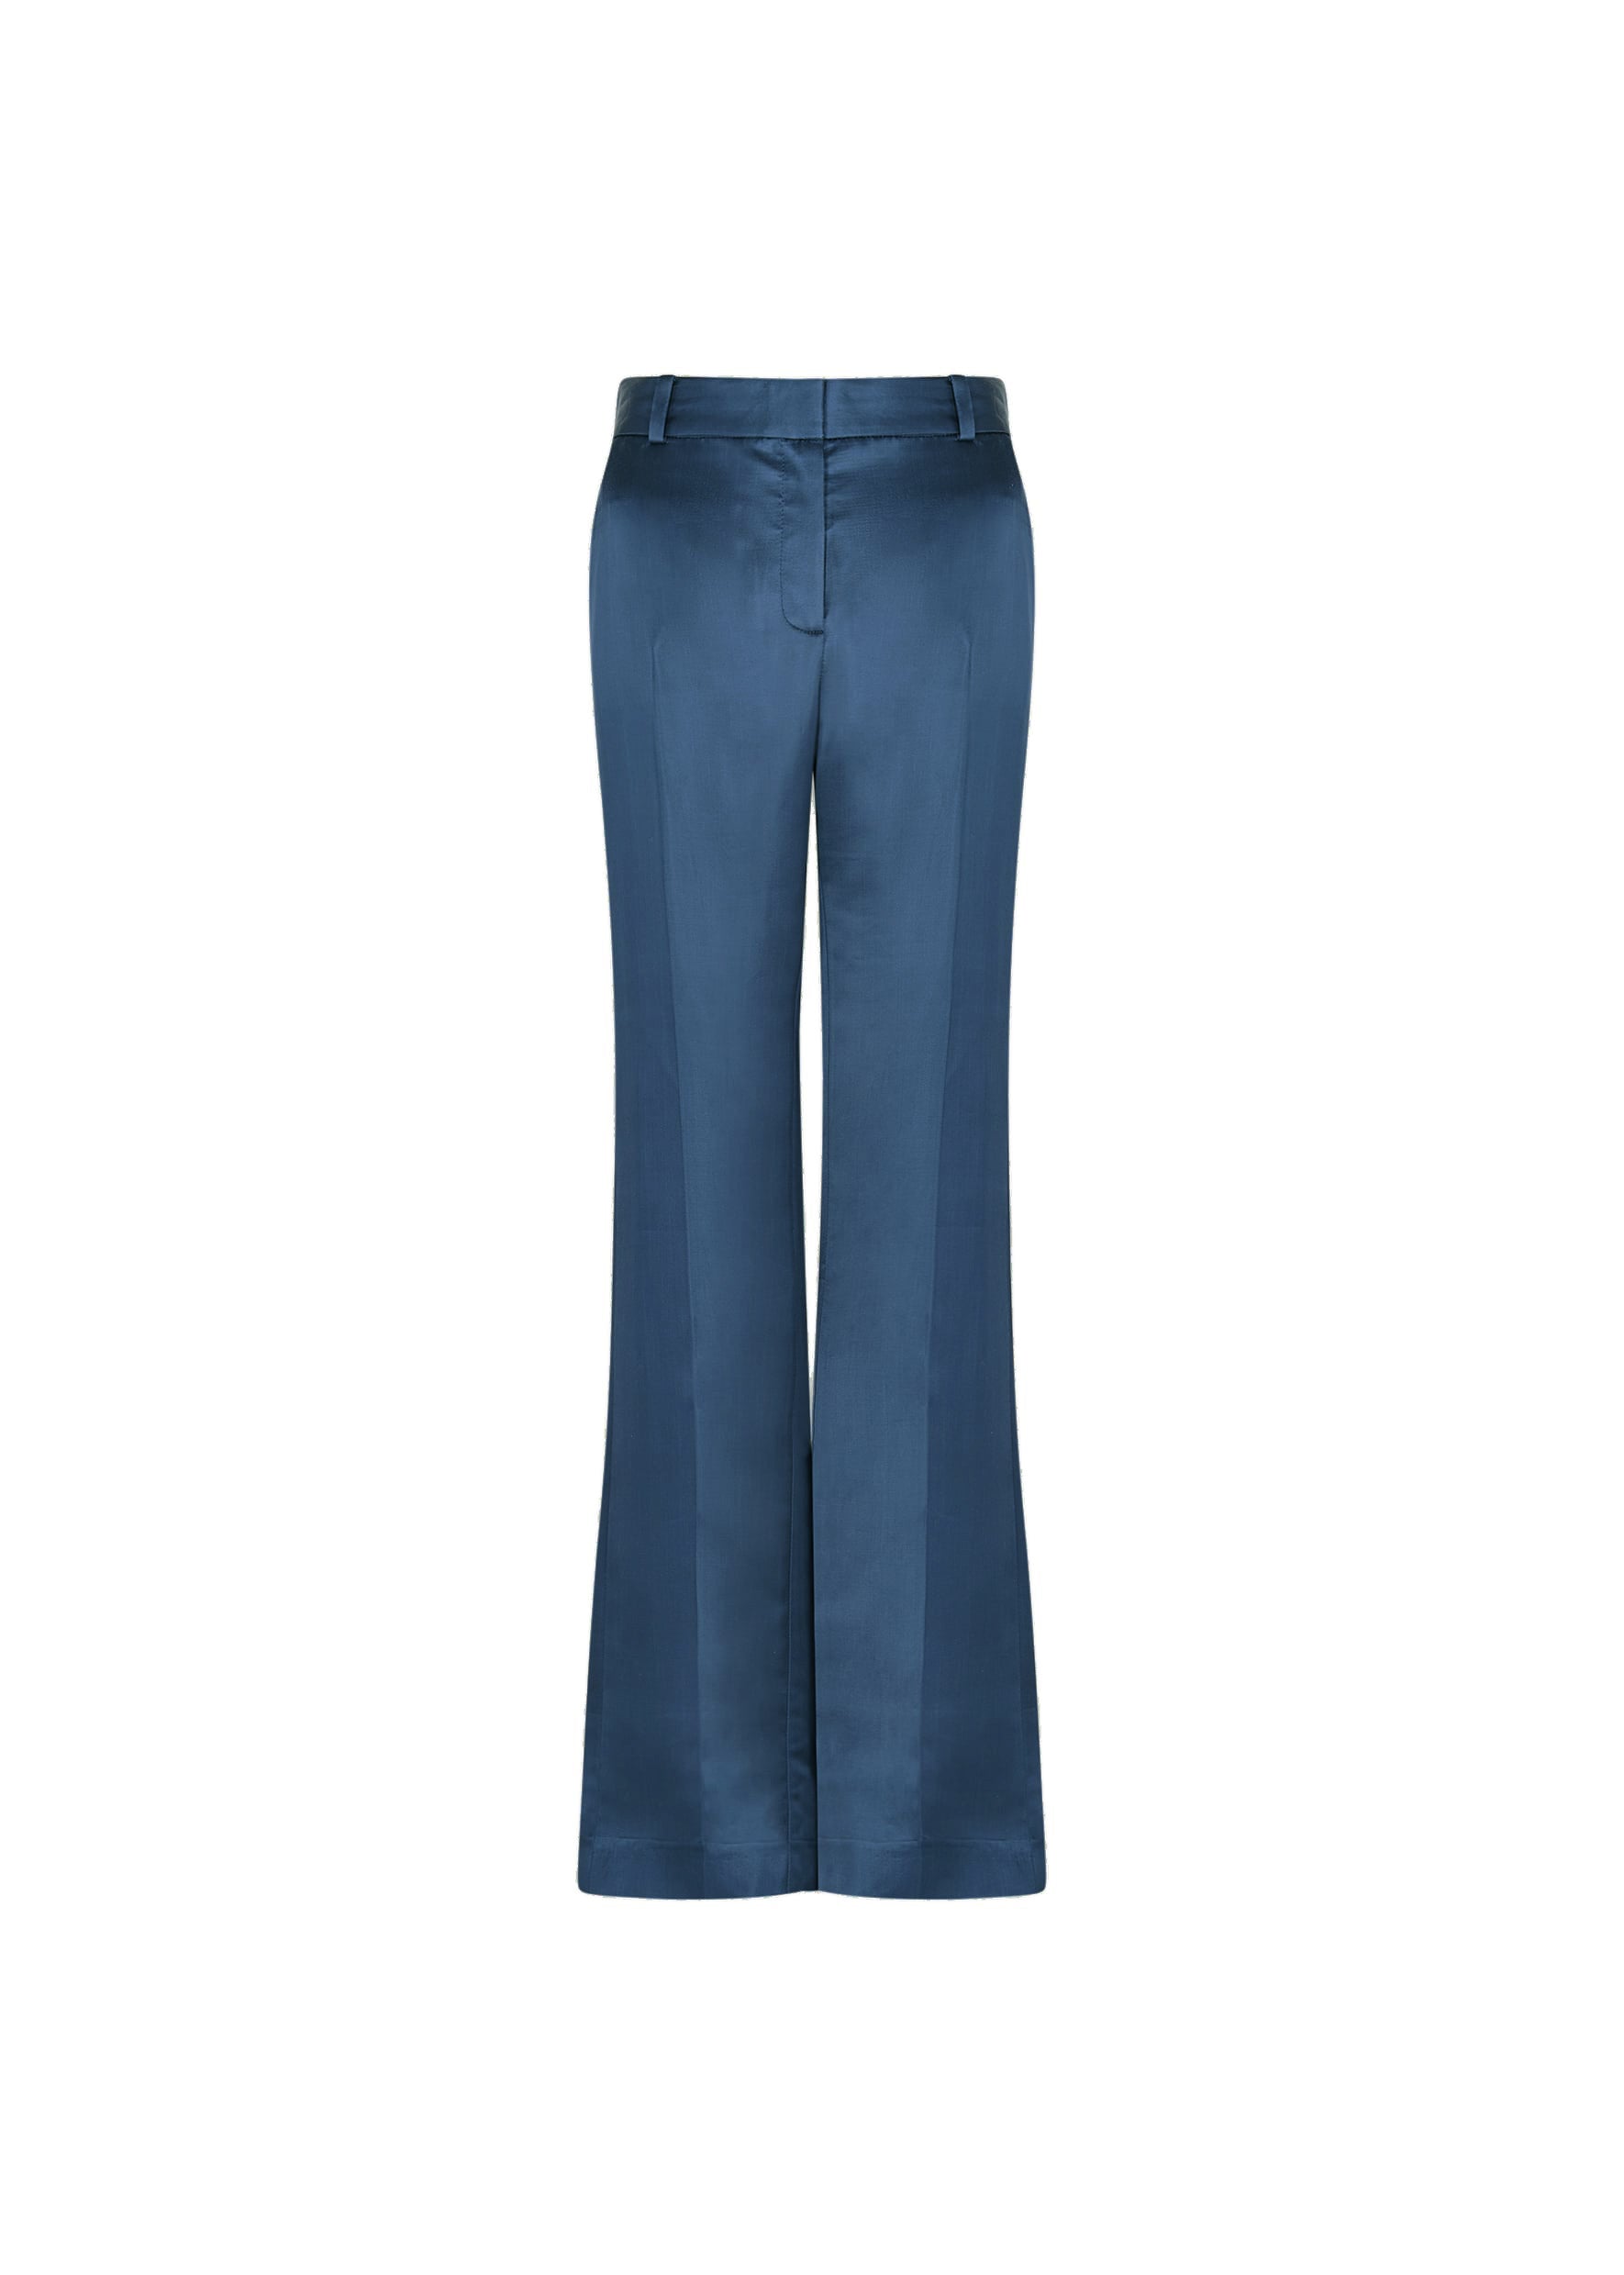 BELORE SLIMS Slim Fit Women Blue Trousers - Buy BELORE SLIMS Slim